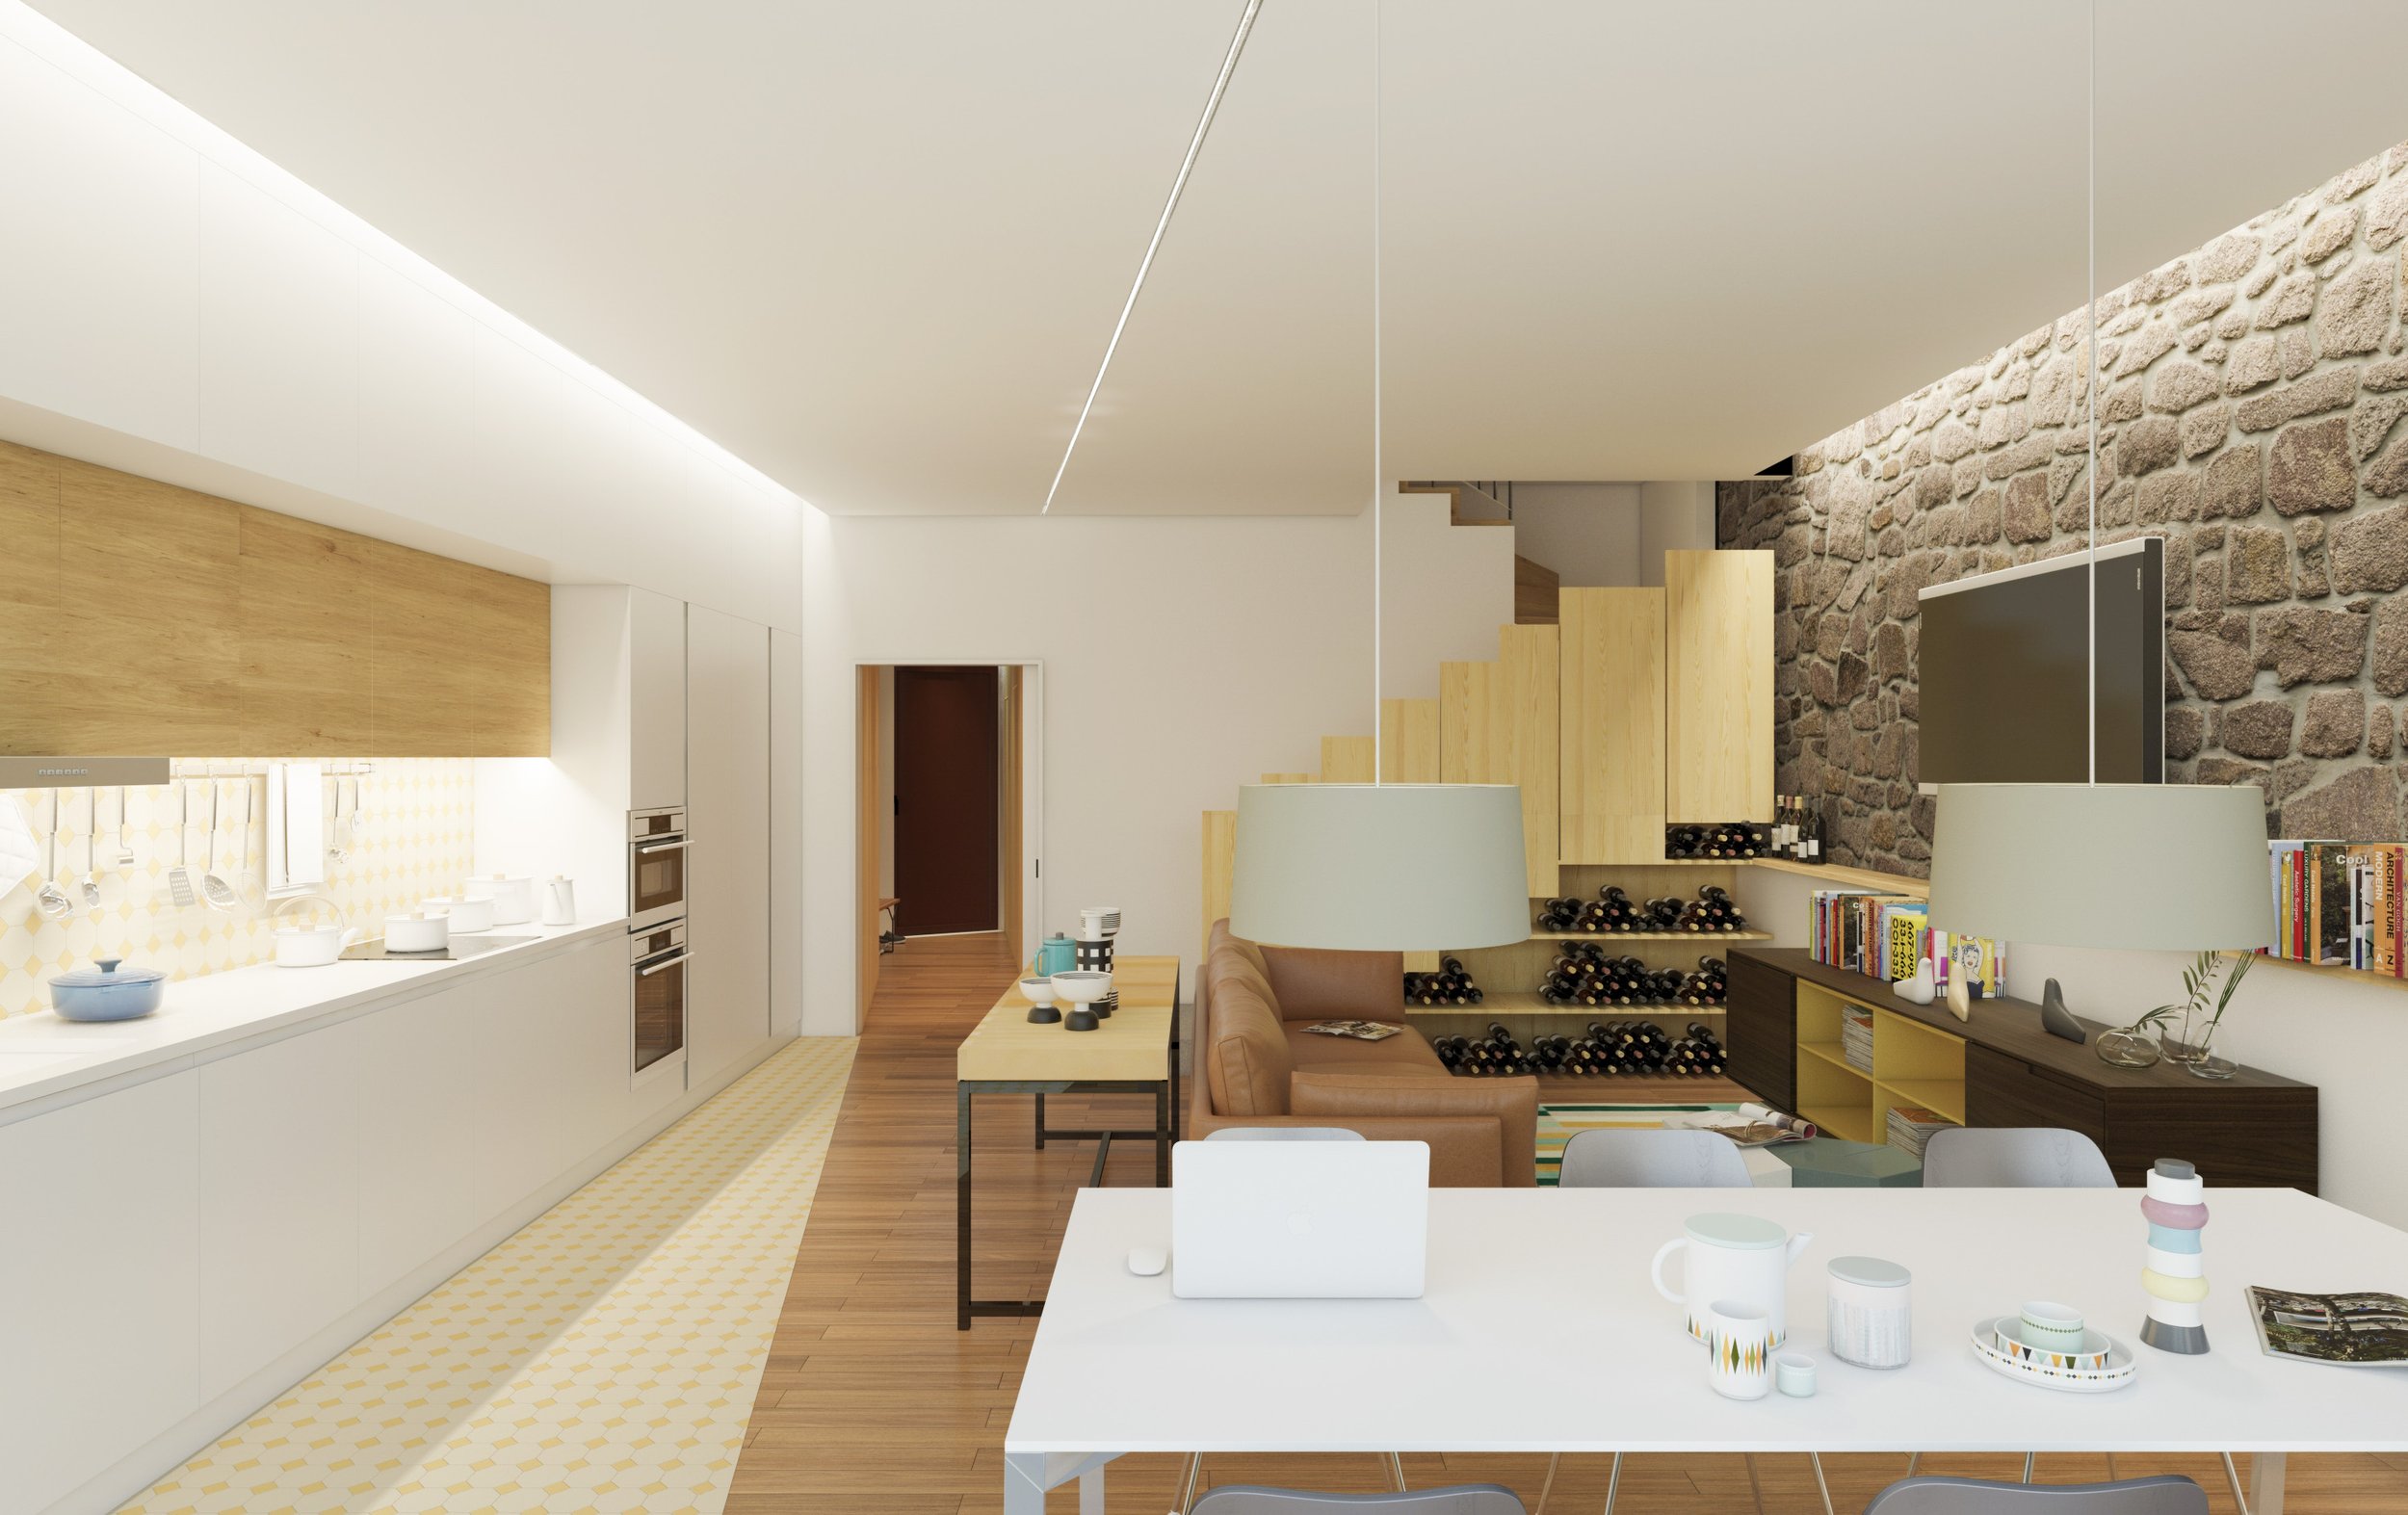 Moradia Covelo - Porto - arquitectura - eva atelier - reconstrução (7).jpg